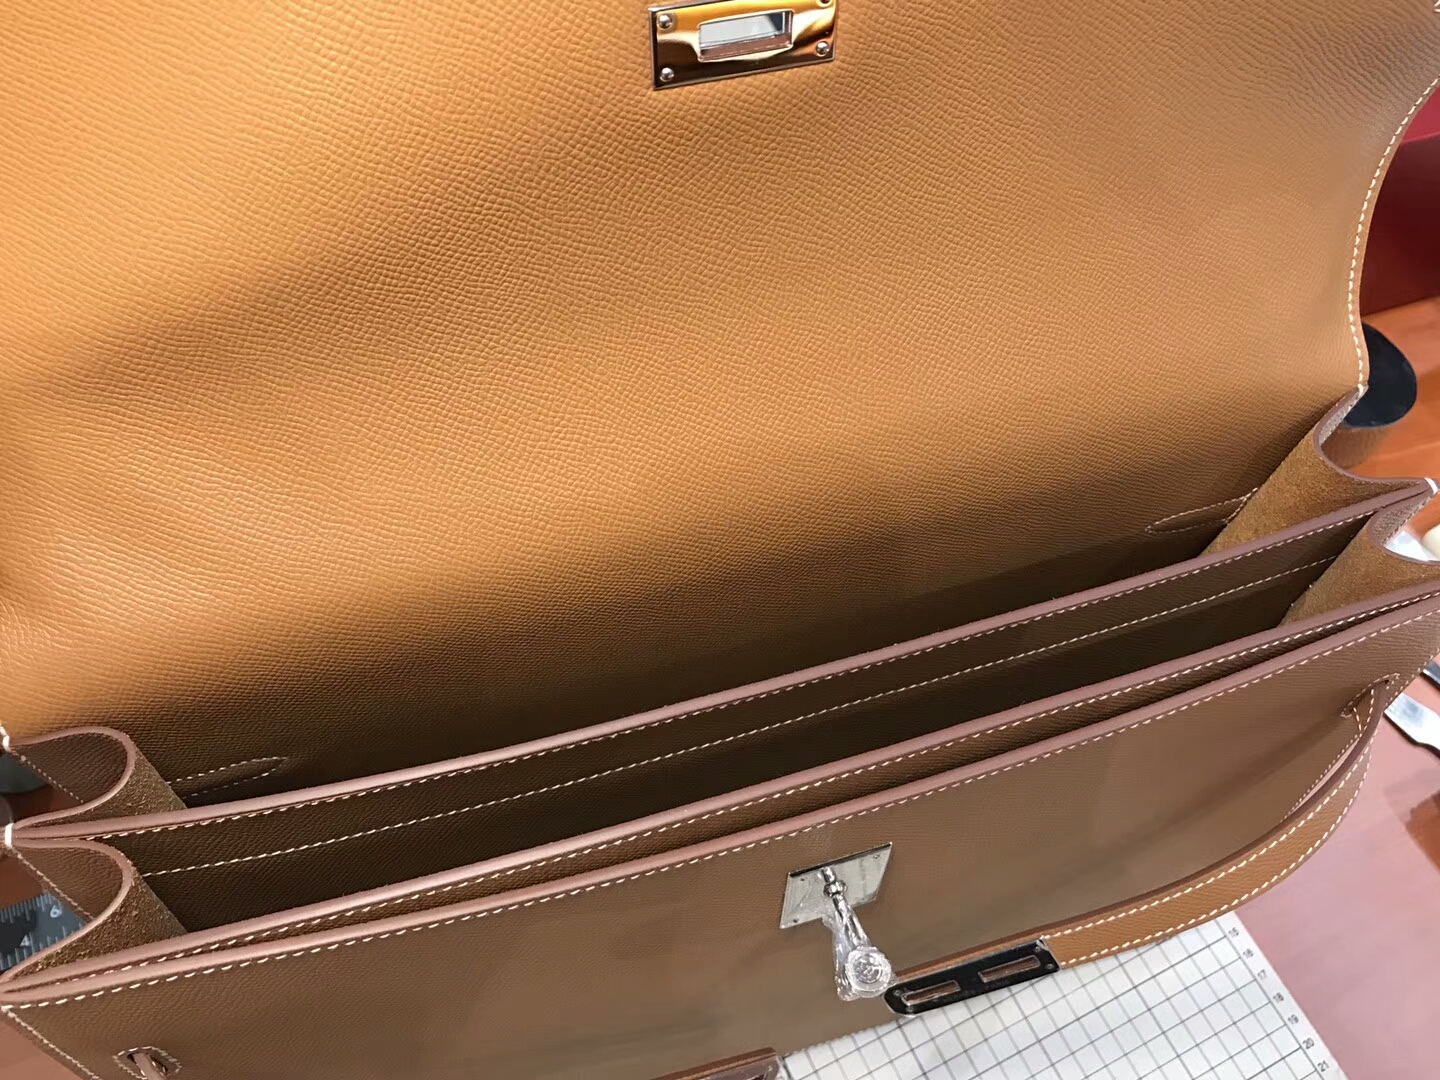 HERMES 爱马仕 男士公文包  CK37 金棕色 Gold 现货系列 配全套专柜原版包装 银扣